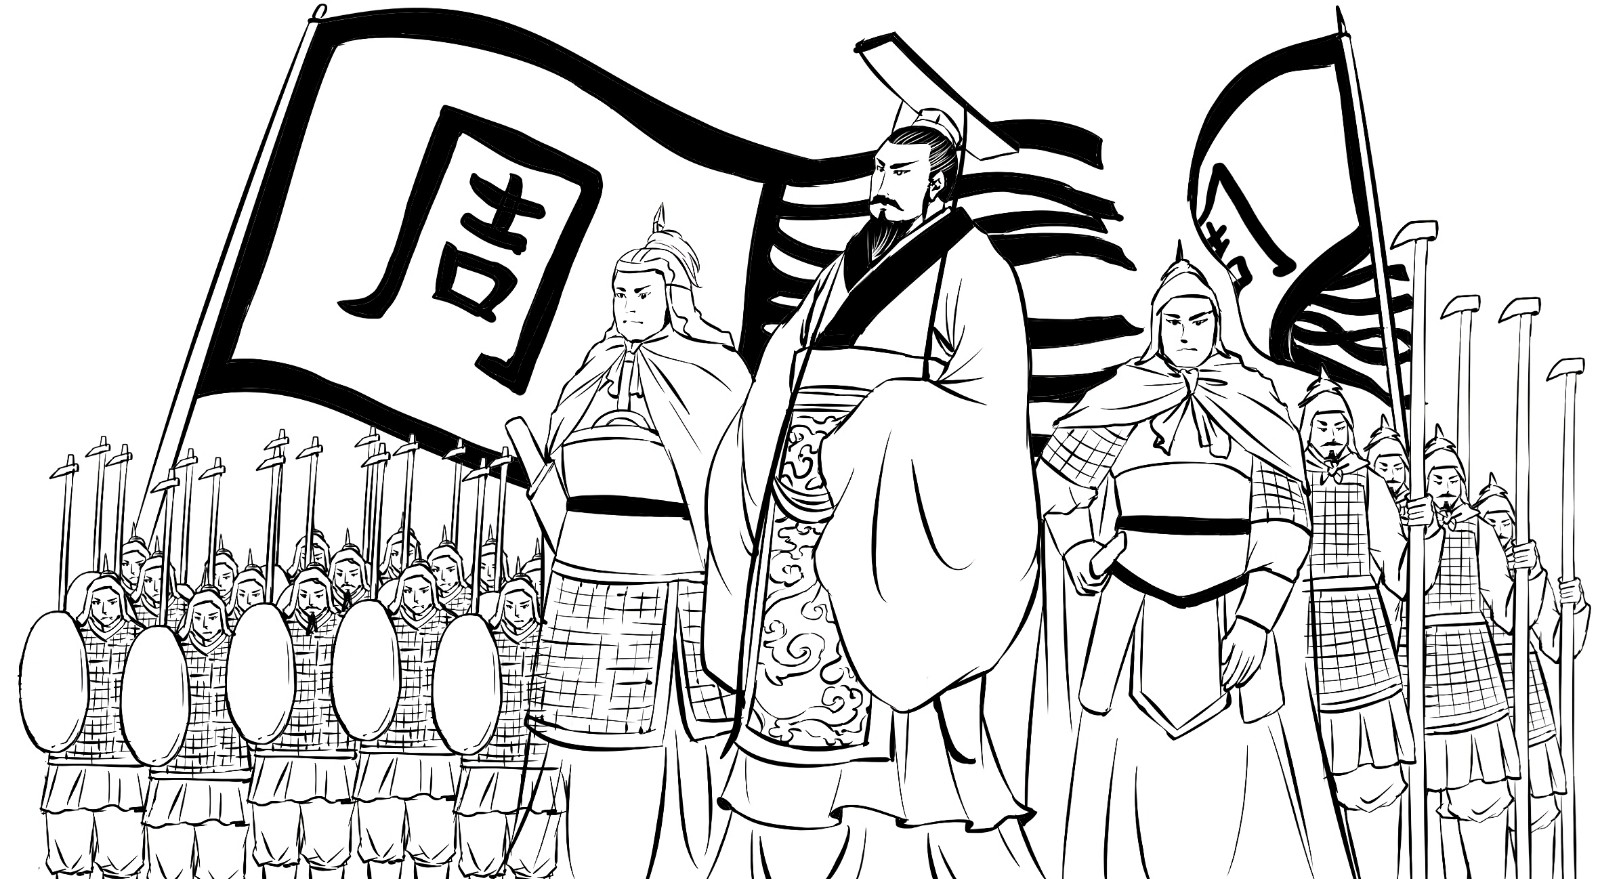 春秋五霸的说法有很多，为何只有齐桓公、晋文公和楚庄王被公认